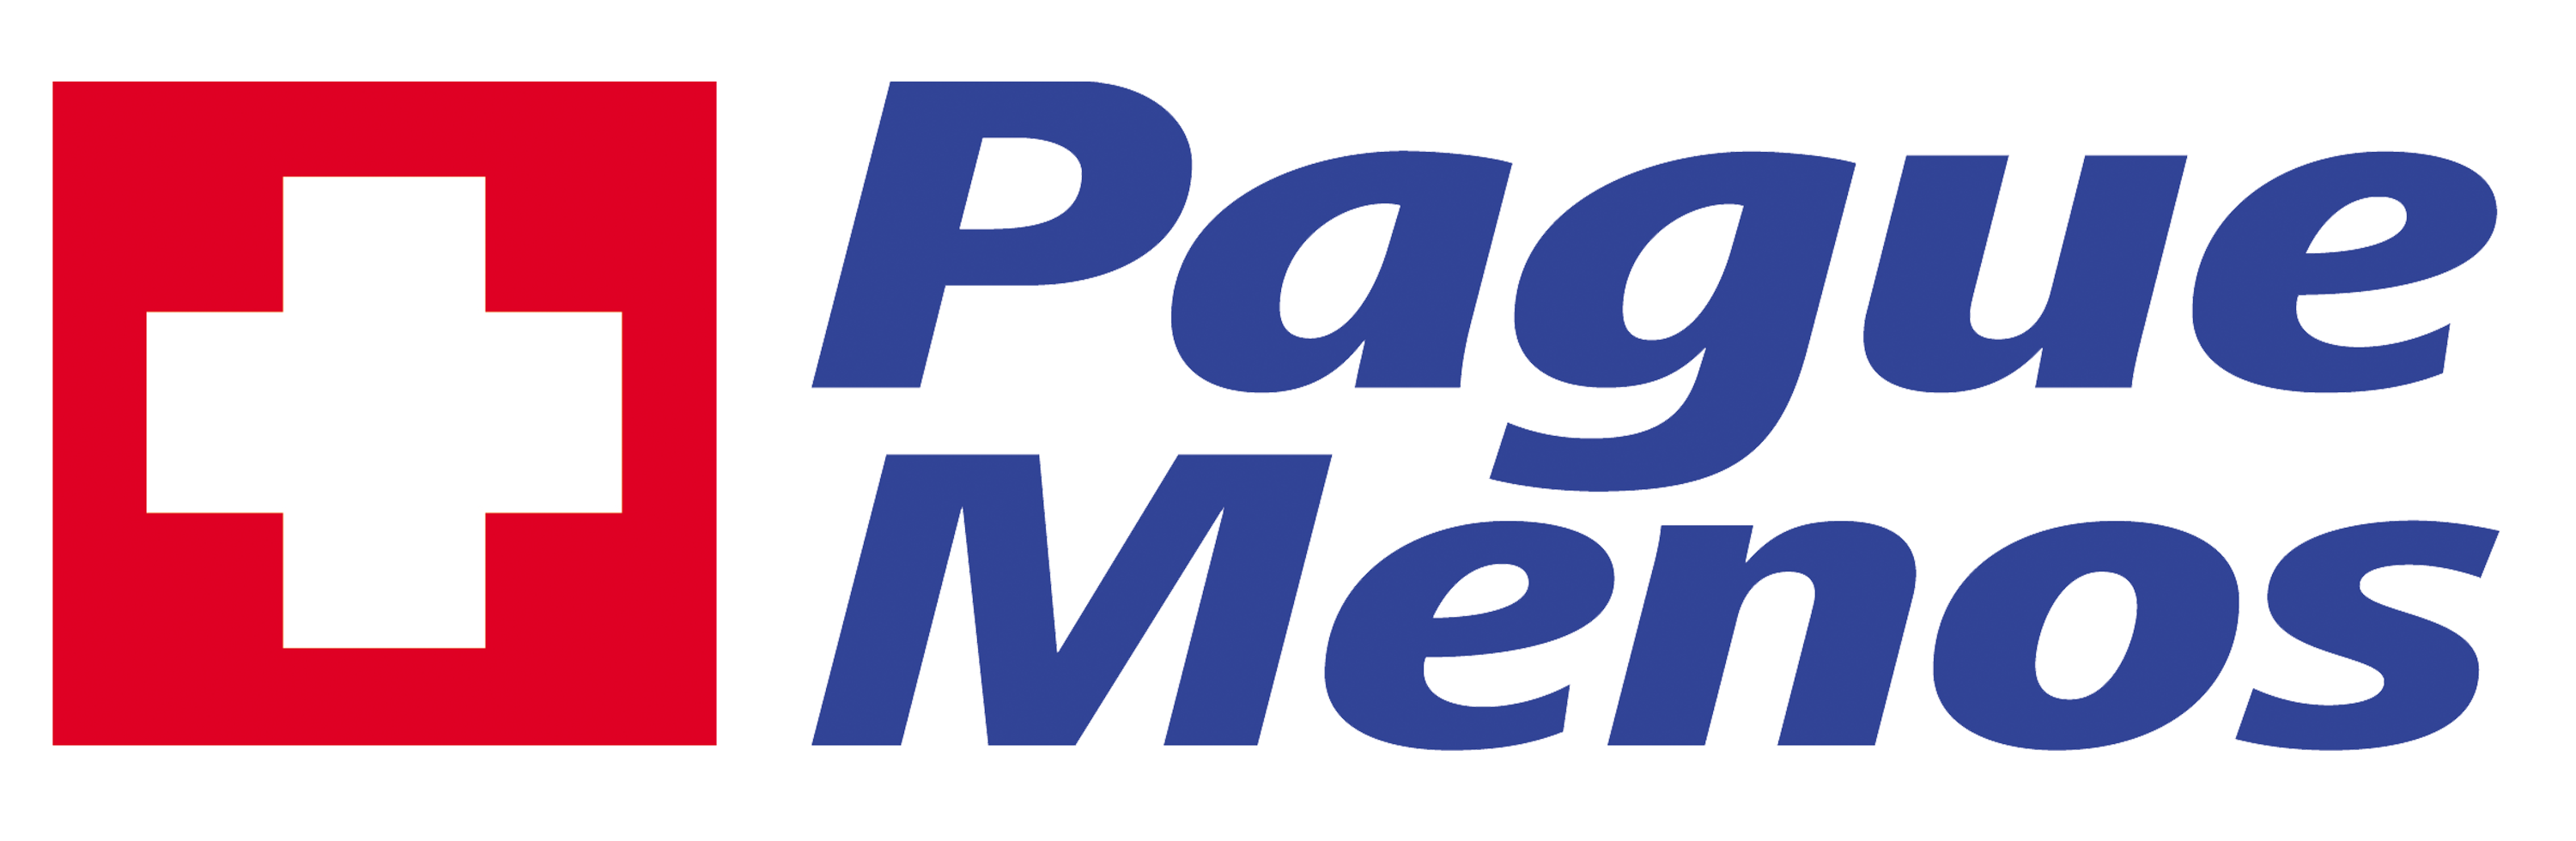 Farmacia Pague Menos - Fabriciano - Centro  MG